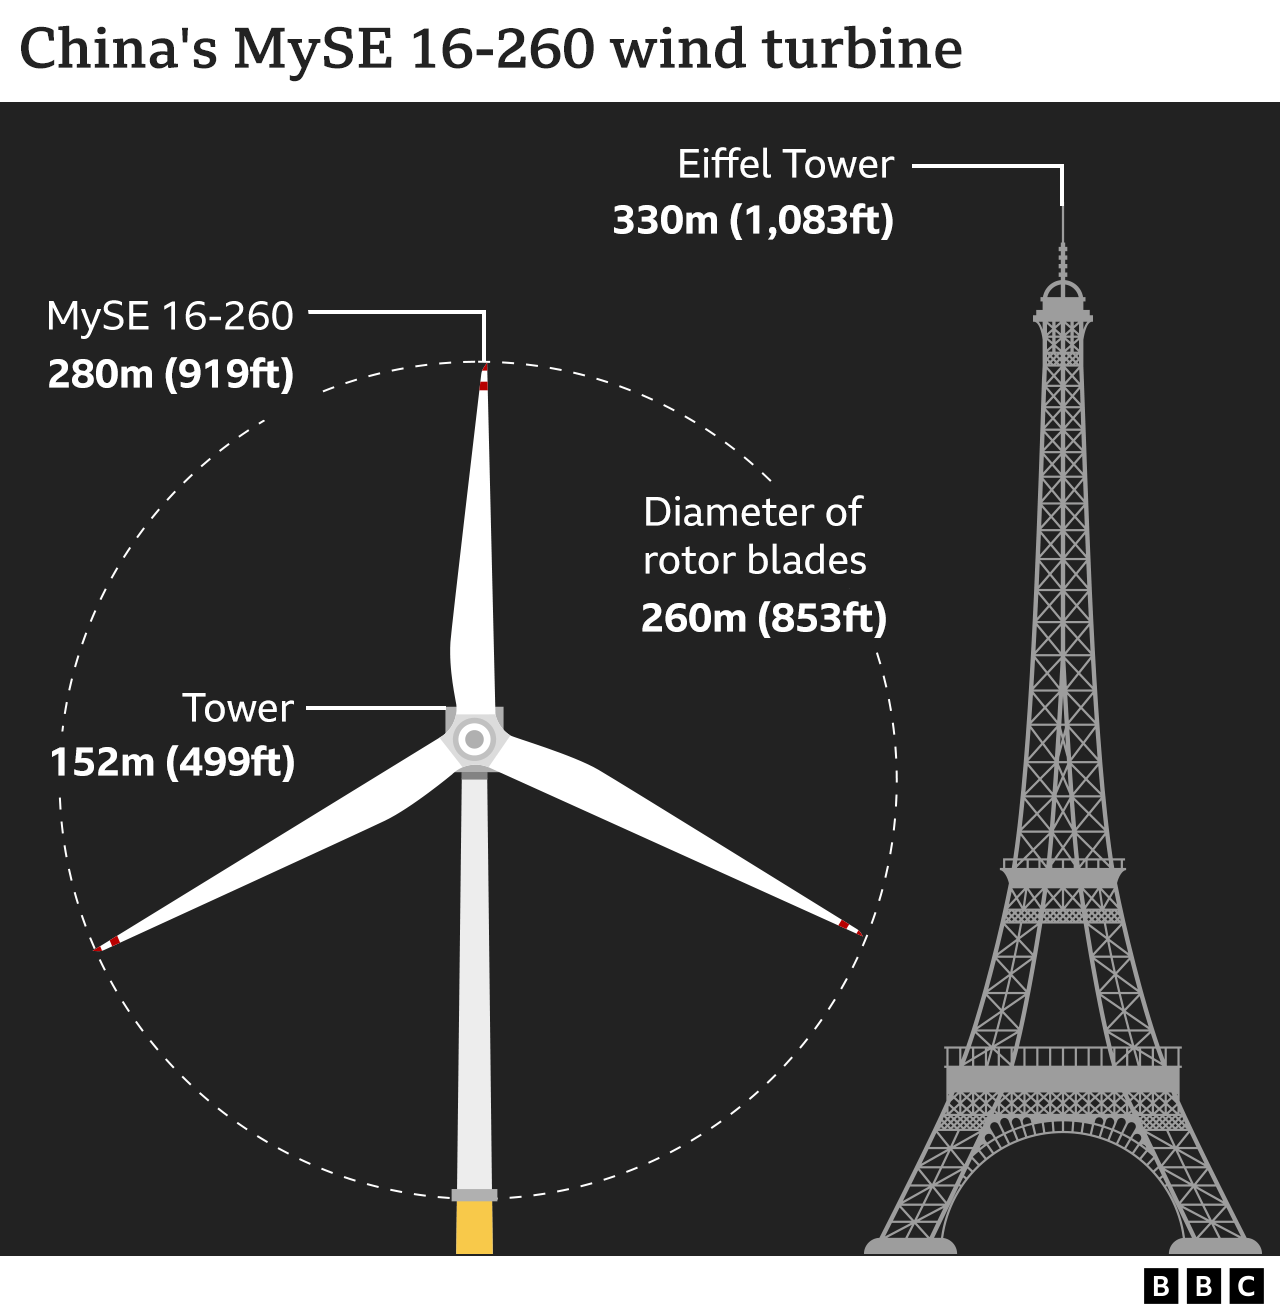 Wind turbine height